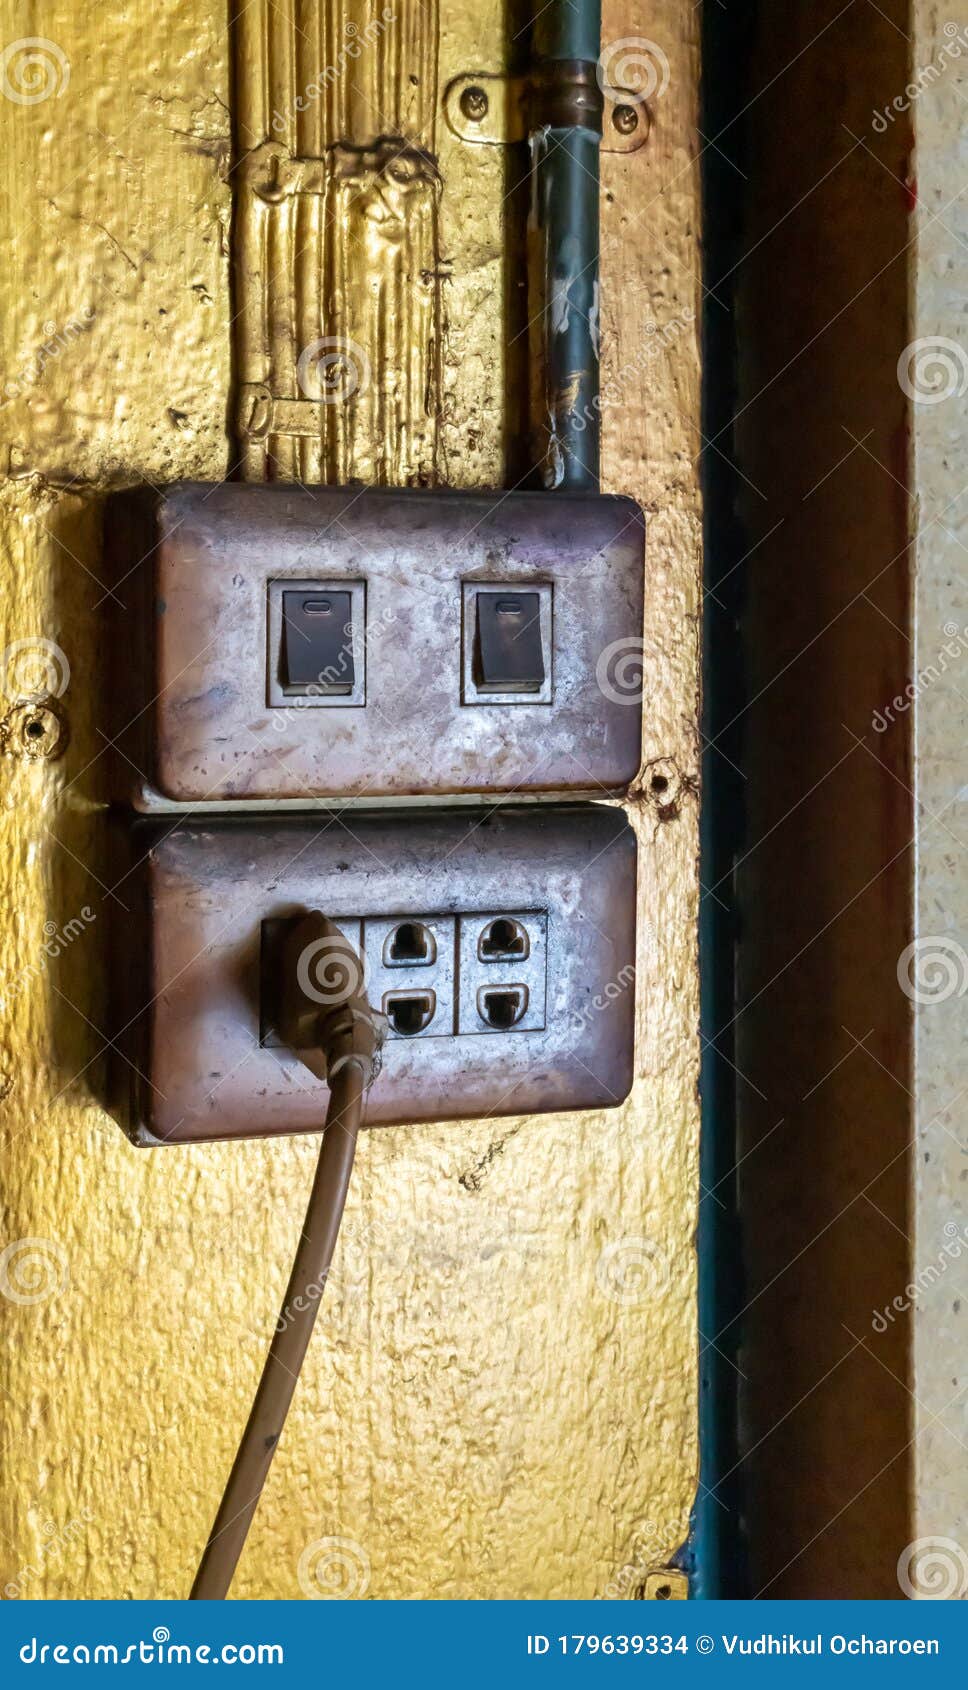 Enchufes e interruptores foto de archivo. Imagen de vacaciones